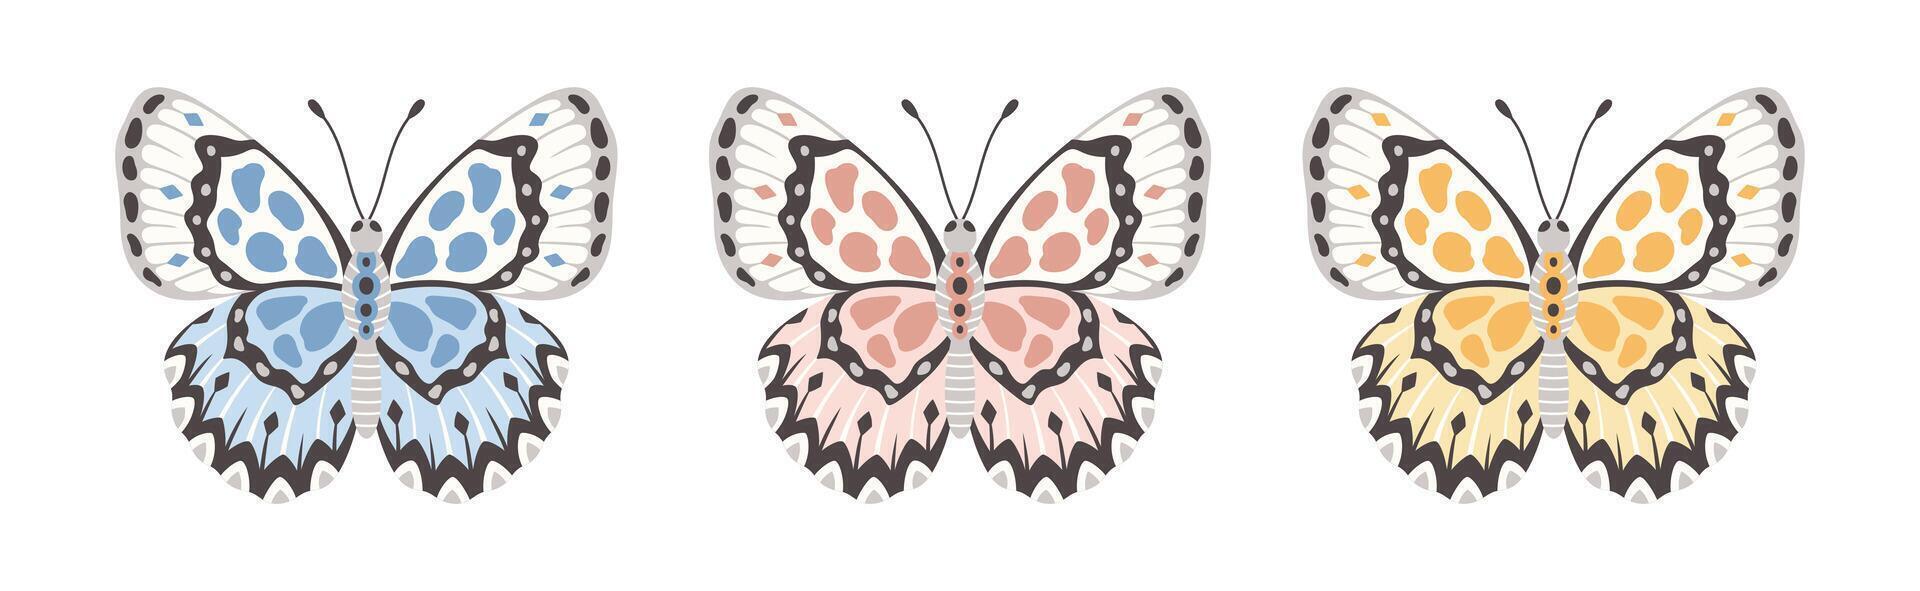 einstellen von Schmetterlinge, Illustration. Insekt Flügel mit abstrakt Ornament, Vorderseite Sicht, ein Symbol zum tätowieren Design. Sommer- Hintergrund vektor